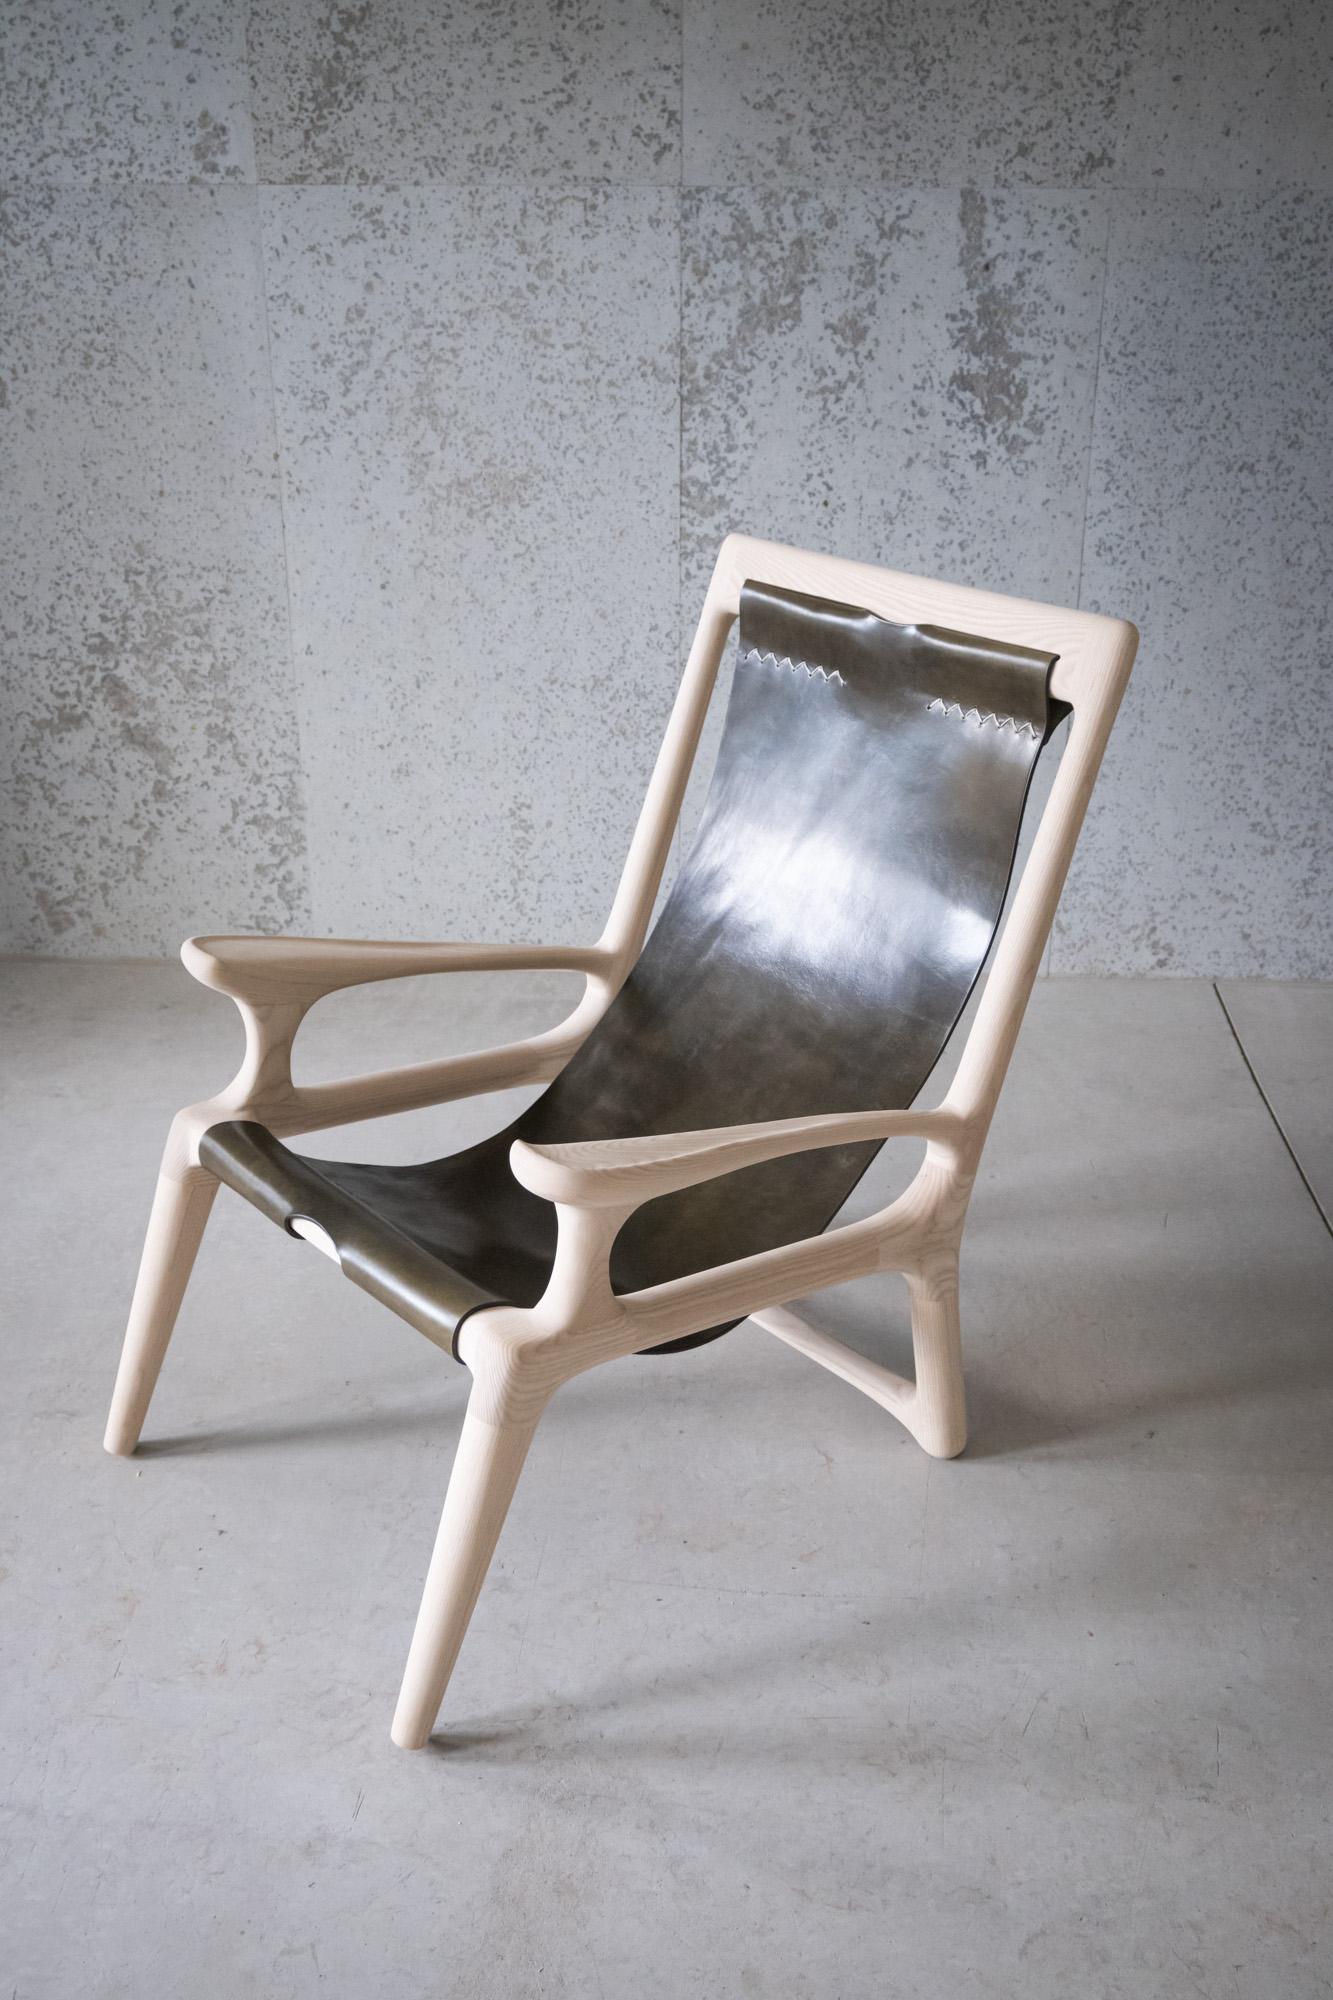 Dieser Stuhl ist genau wie unser Classic Sling Stuhl, mit einer Ausnahme: Die Armlehnen sind mit den Rückenlehnen verbunden. Dieses Angebot umfasst einen Stuhl.

Dieser preisgekrönte Sling-Stuhl aus Leder und Holz ist das erste Stück, das Fernweh